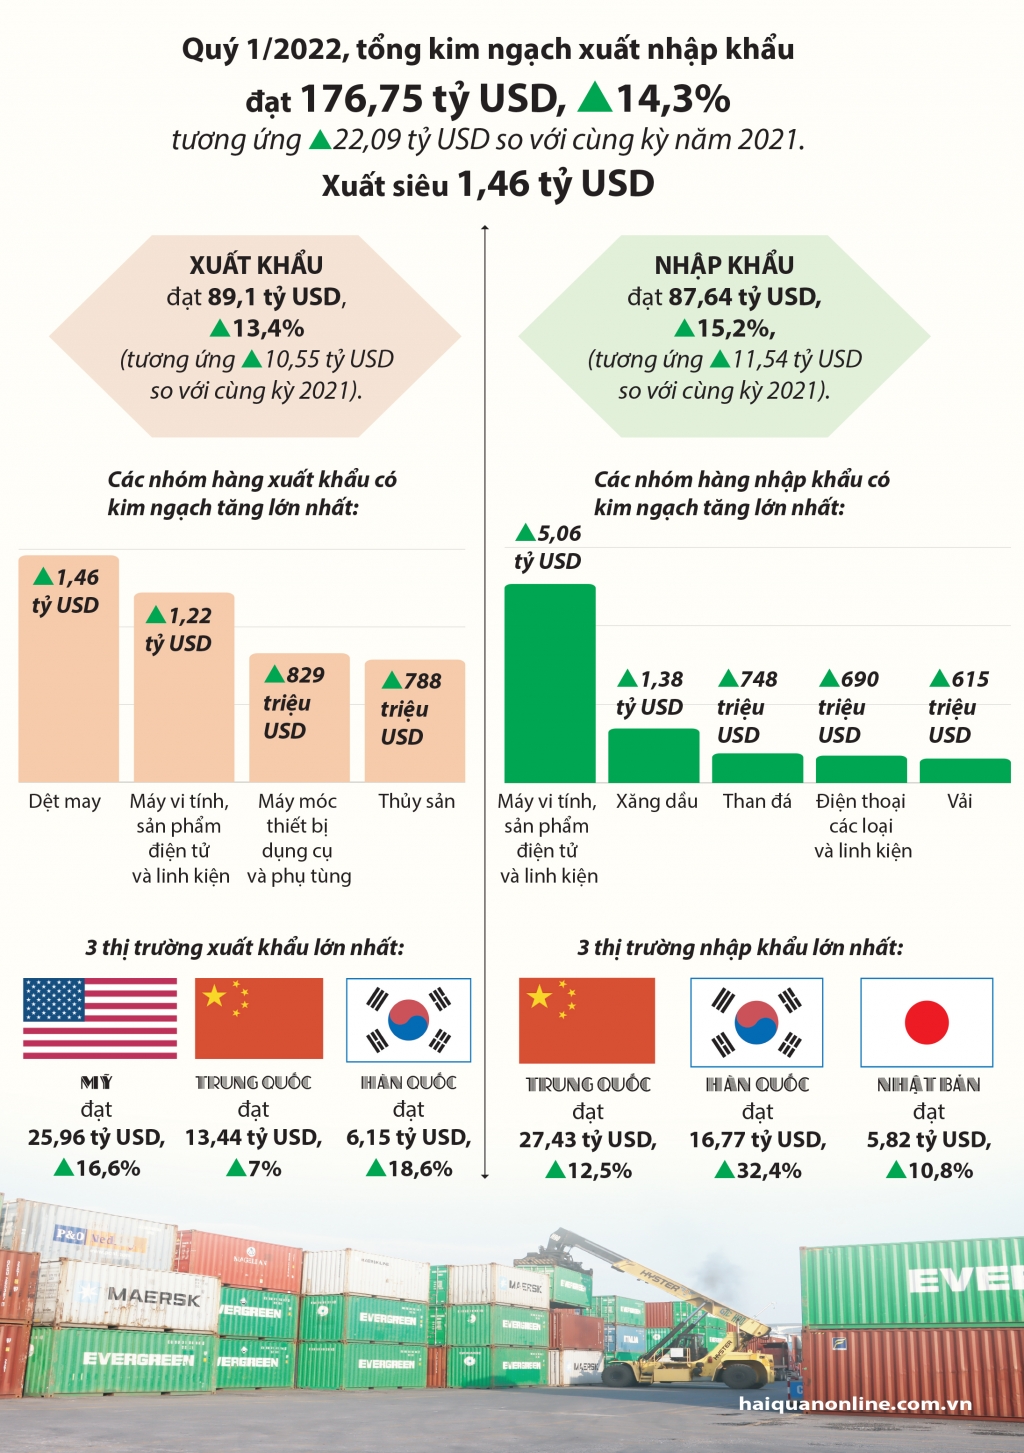 Infographics: Điểm nhấn xuất nhập khẩu quý 1/2022